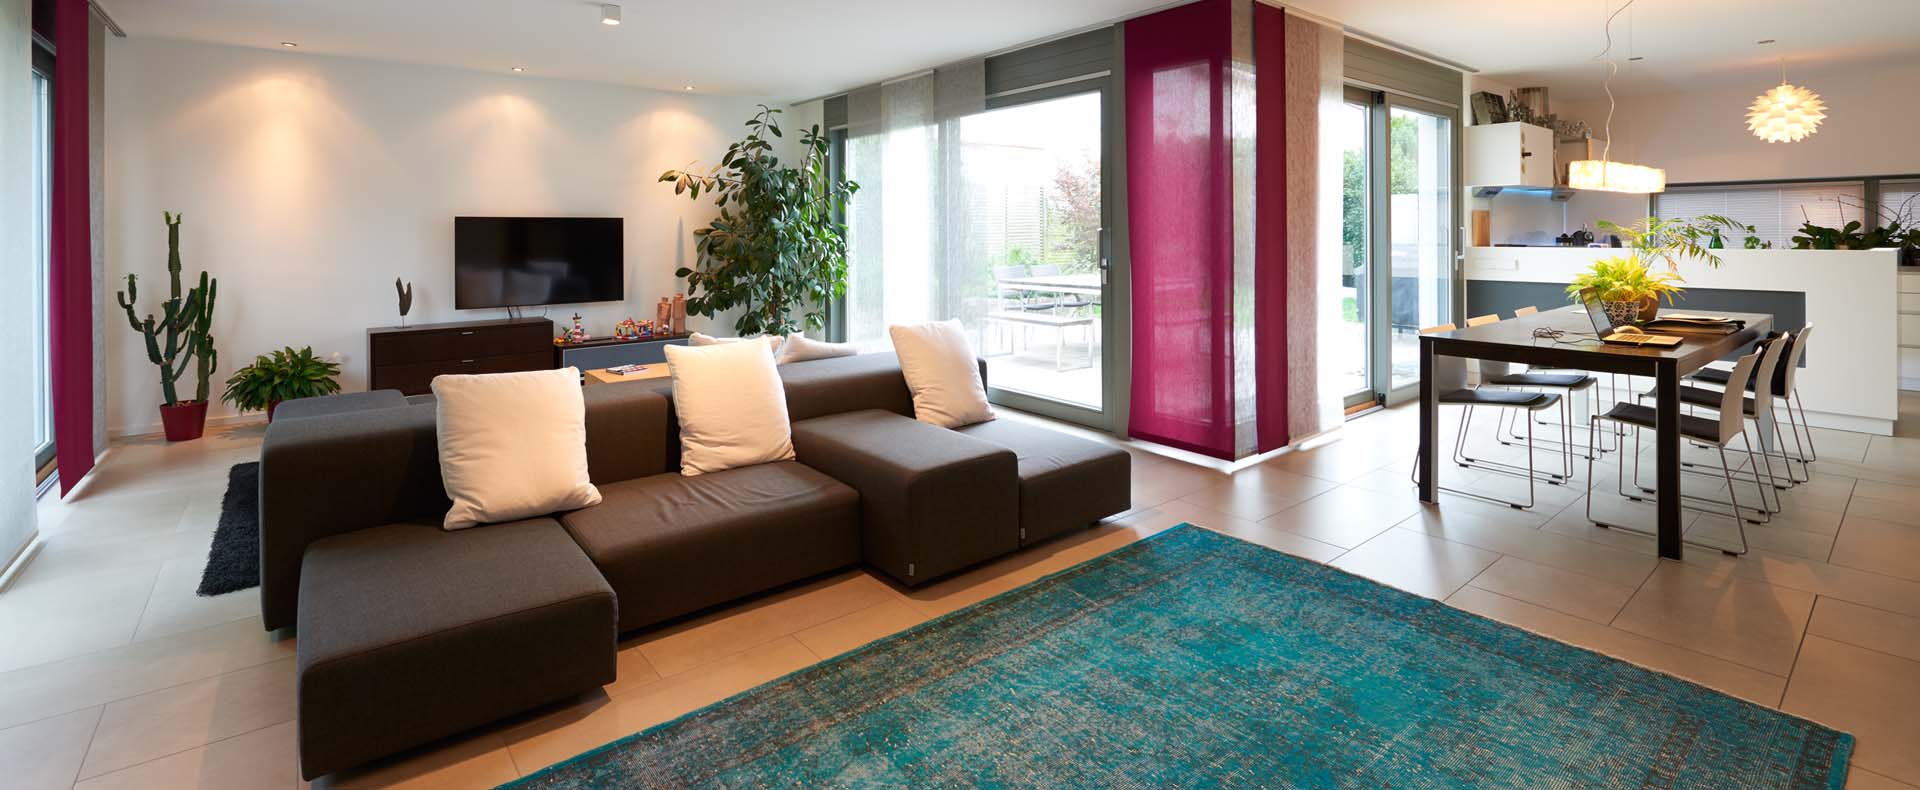 Einfamilienhaus Reutlingen Rommelsbach, 170 m², Energieerzeugung mit Wärmepumpe